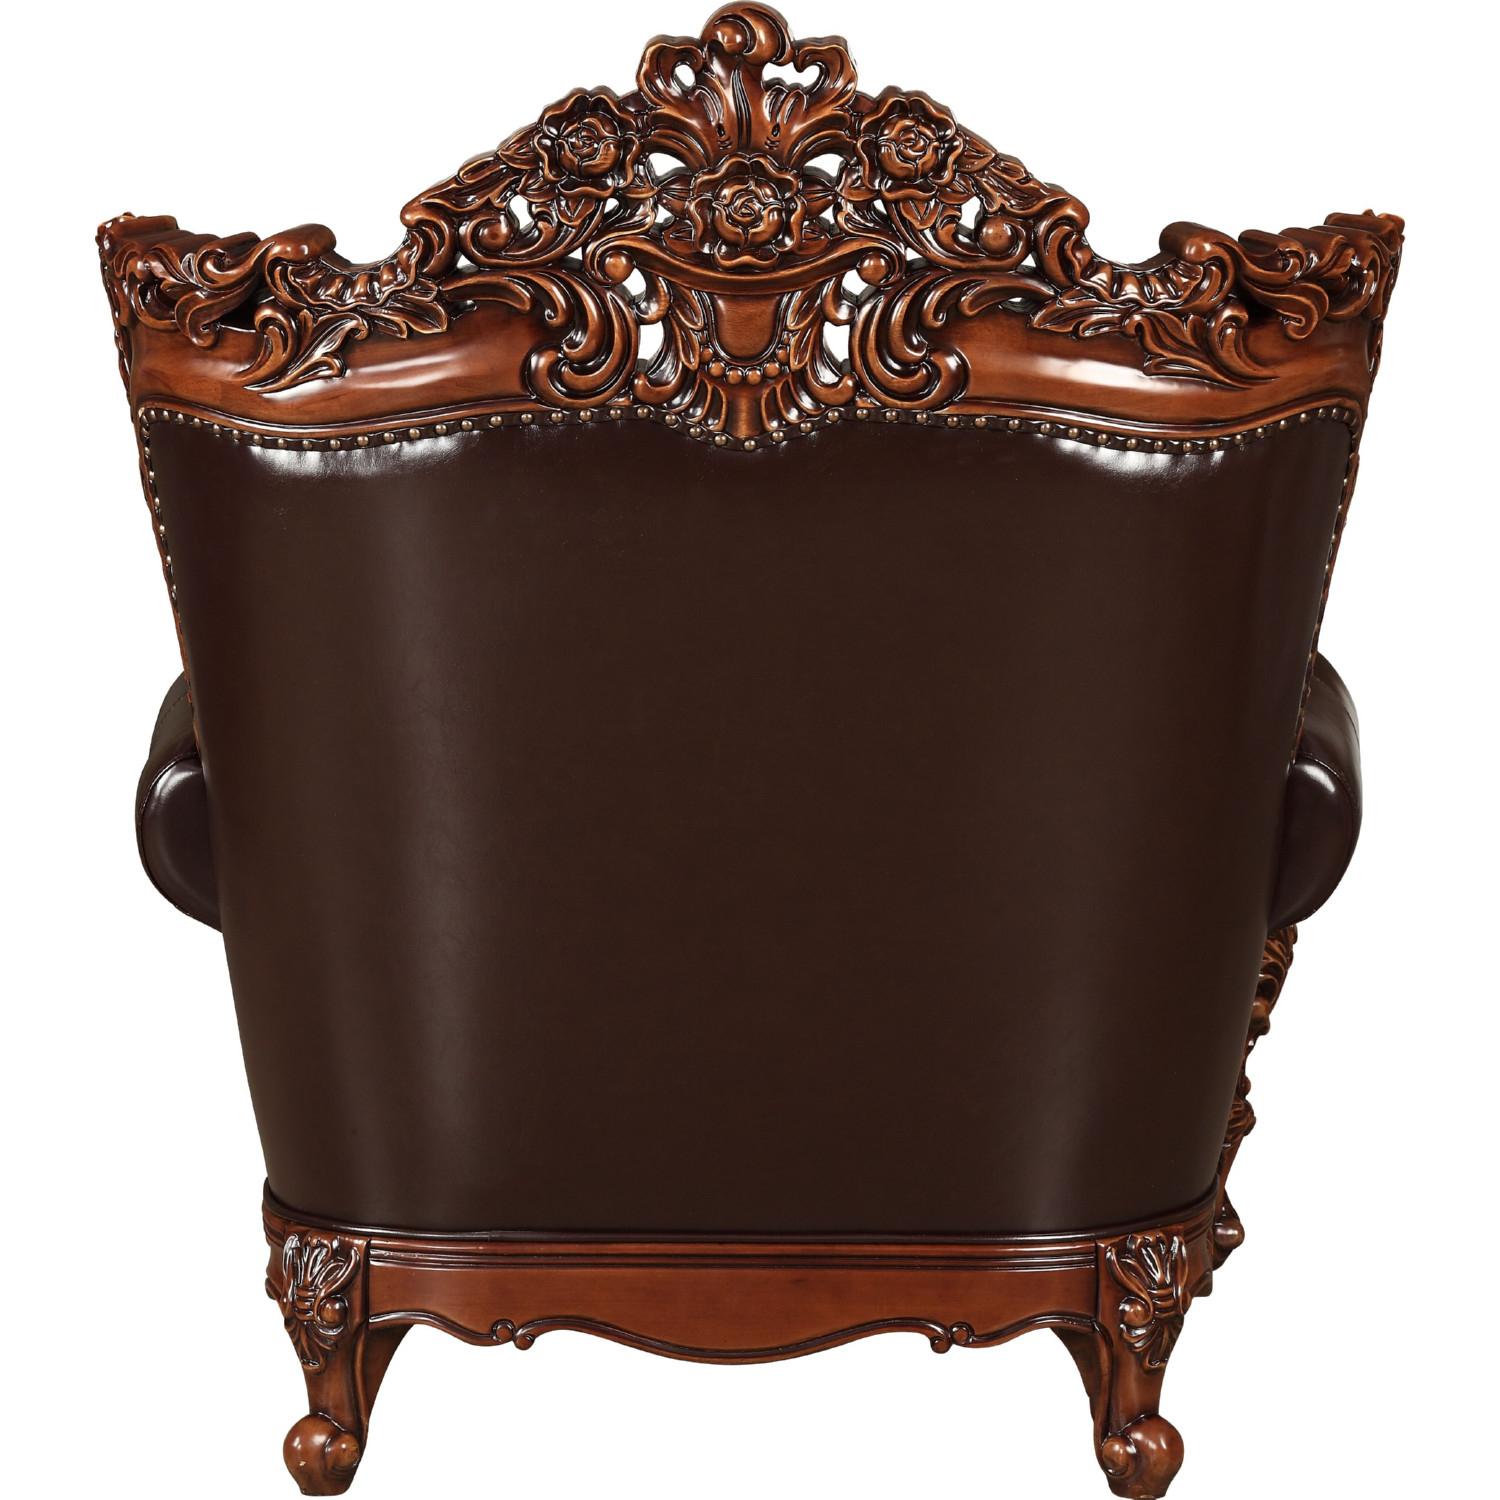 

    
Acme Furniture Forsythia 53072 Arm Chair Dark Walnut/Espresso 53072-Forsythia
